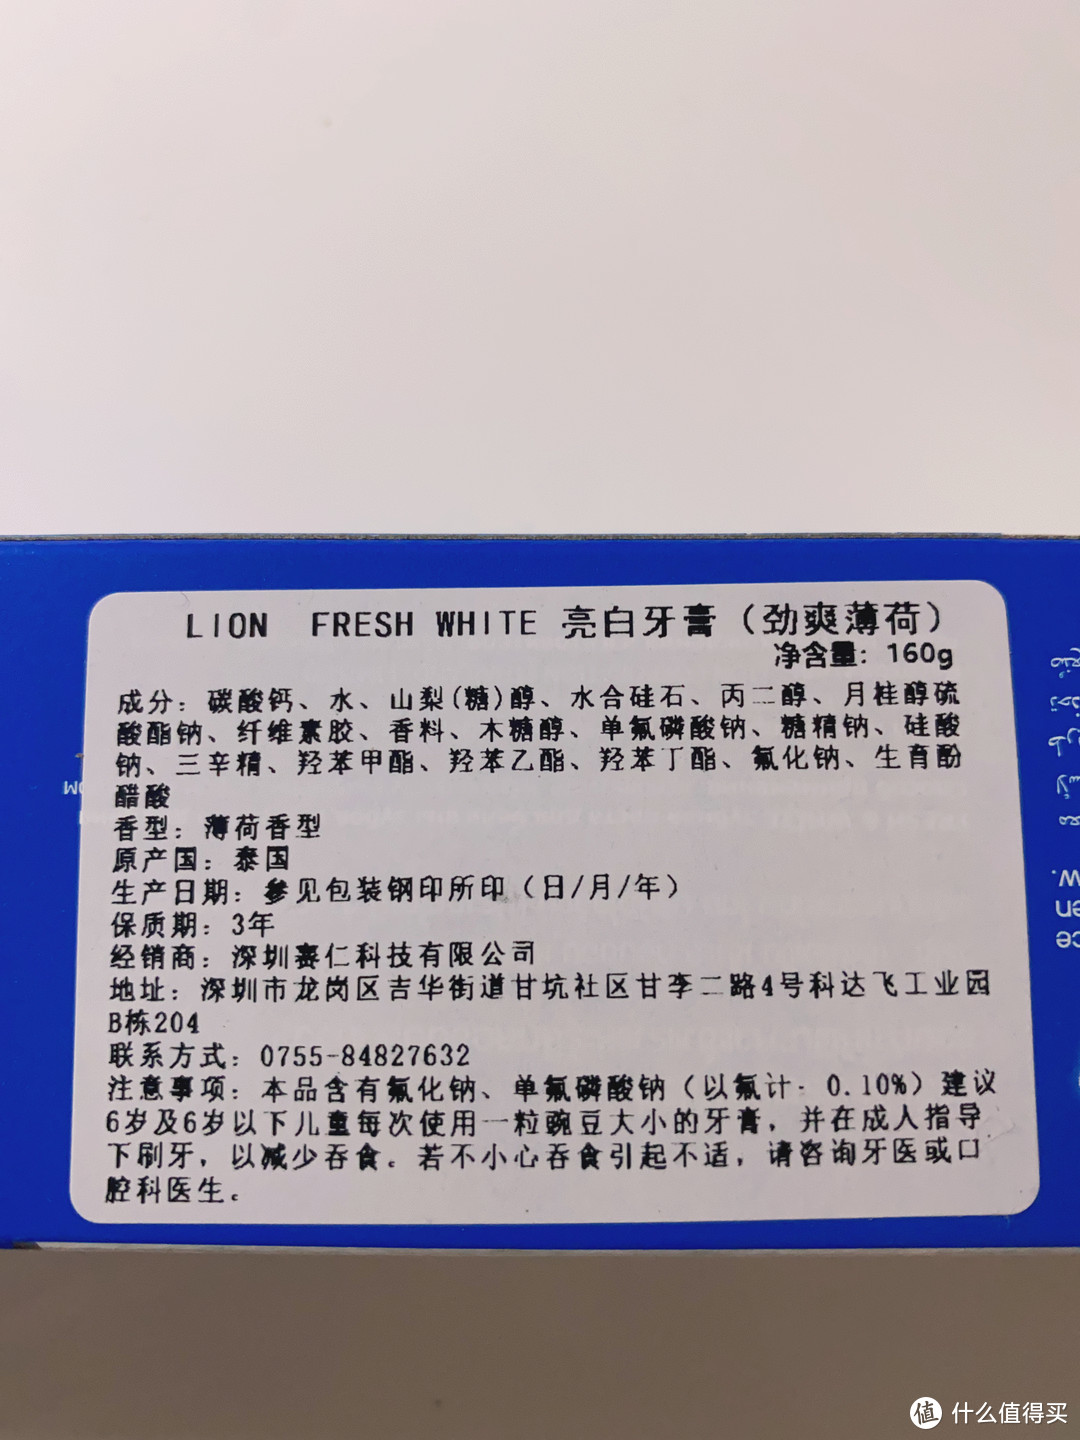 用天猫国际通用红包，1元钱在天猫国际买到160g狮王美白牙膏